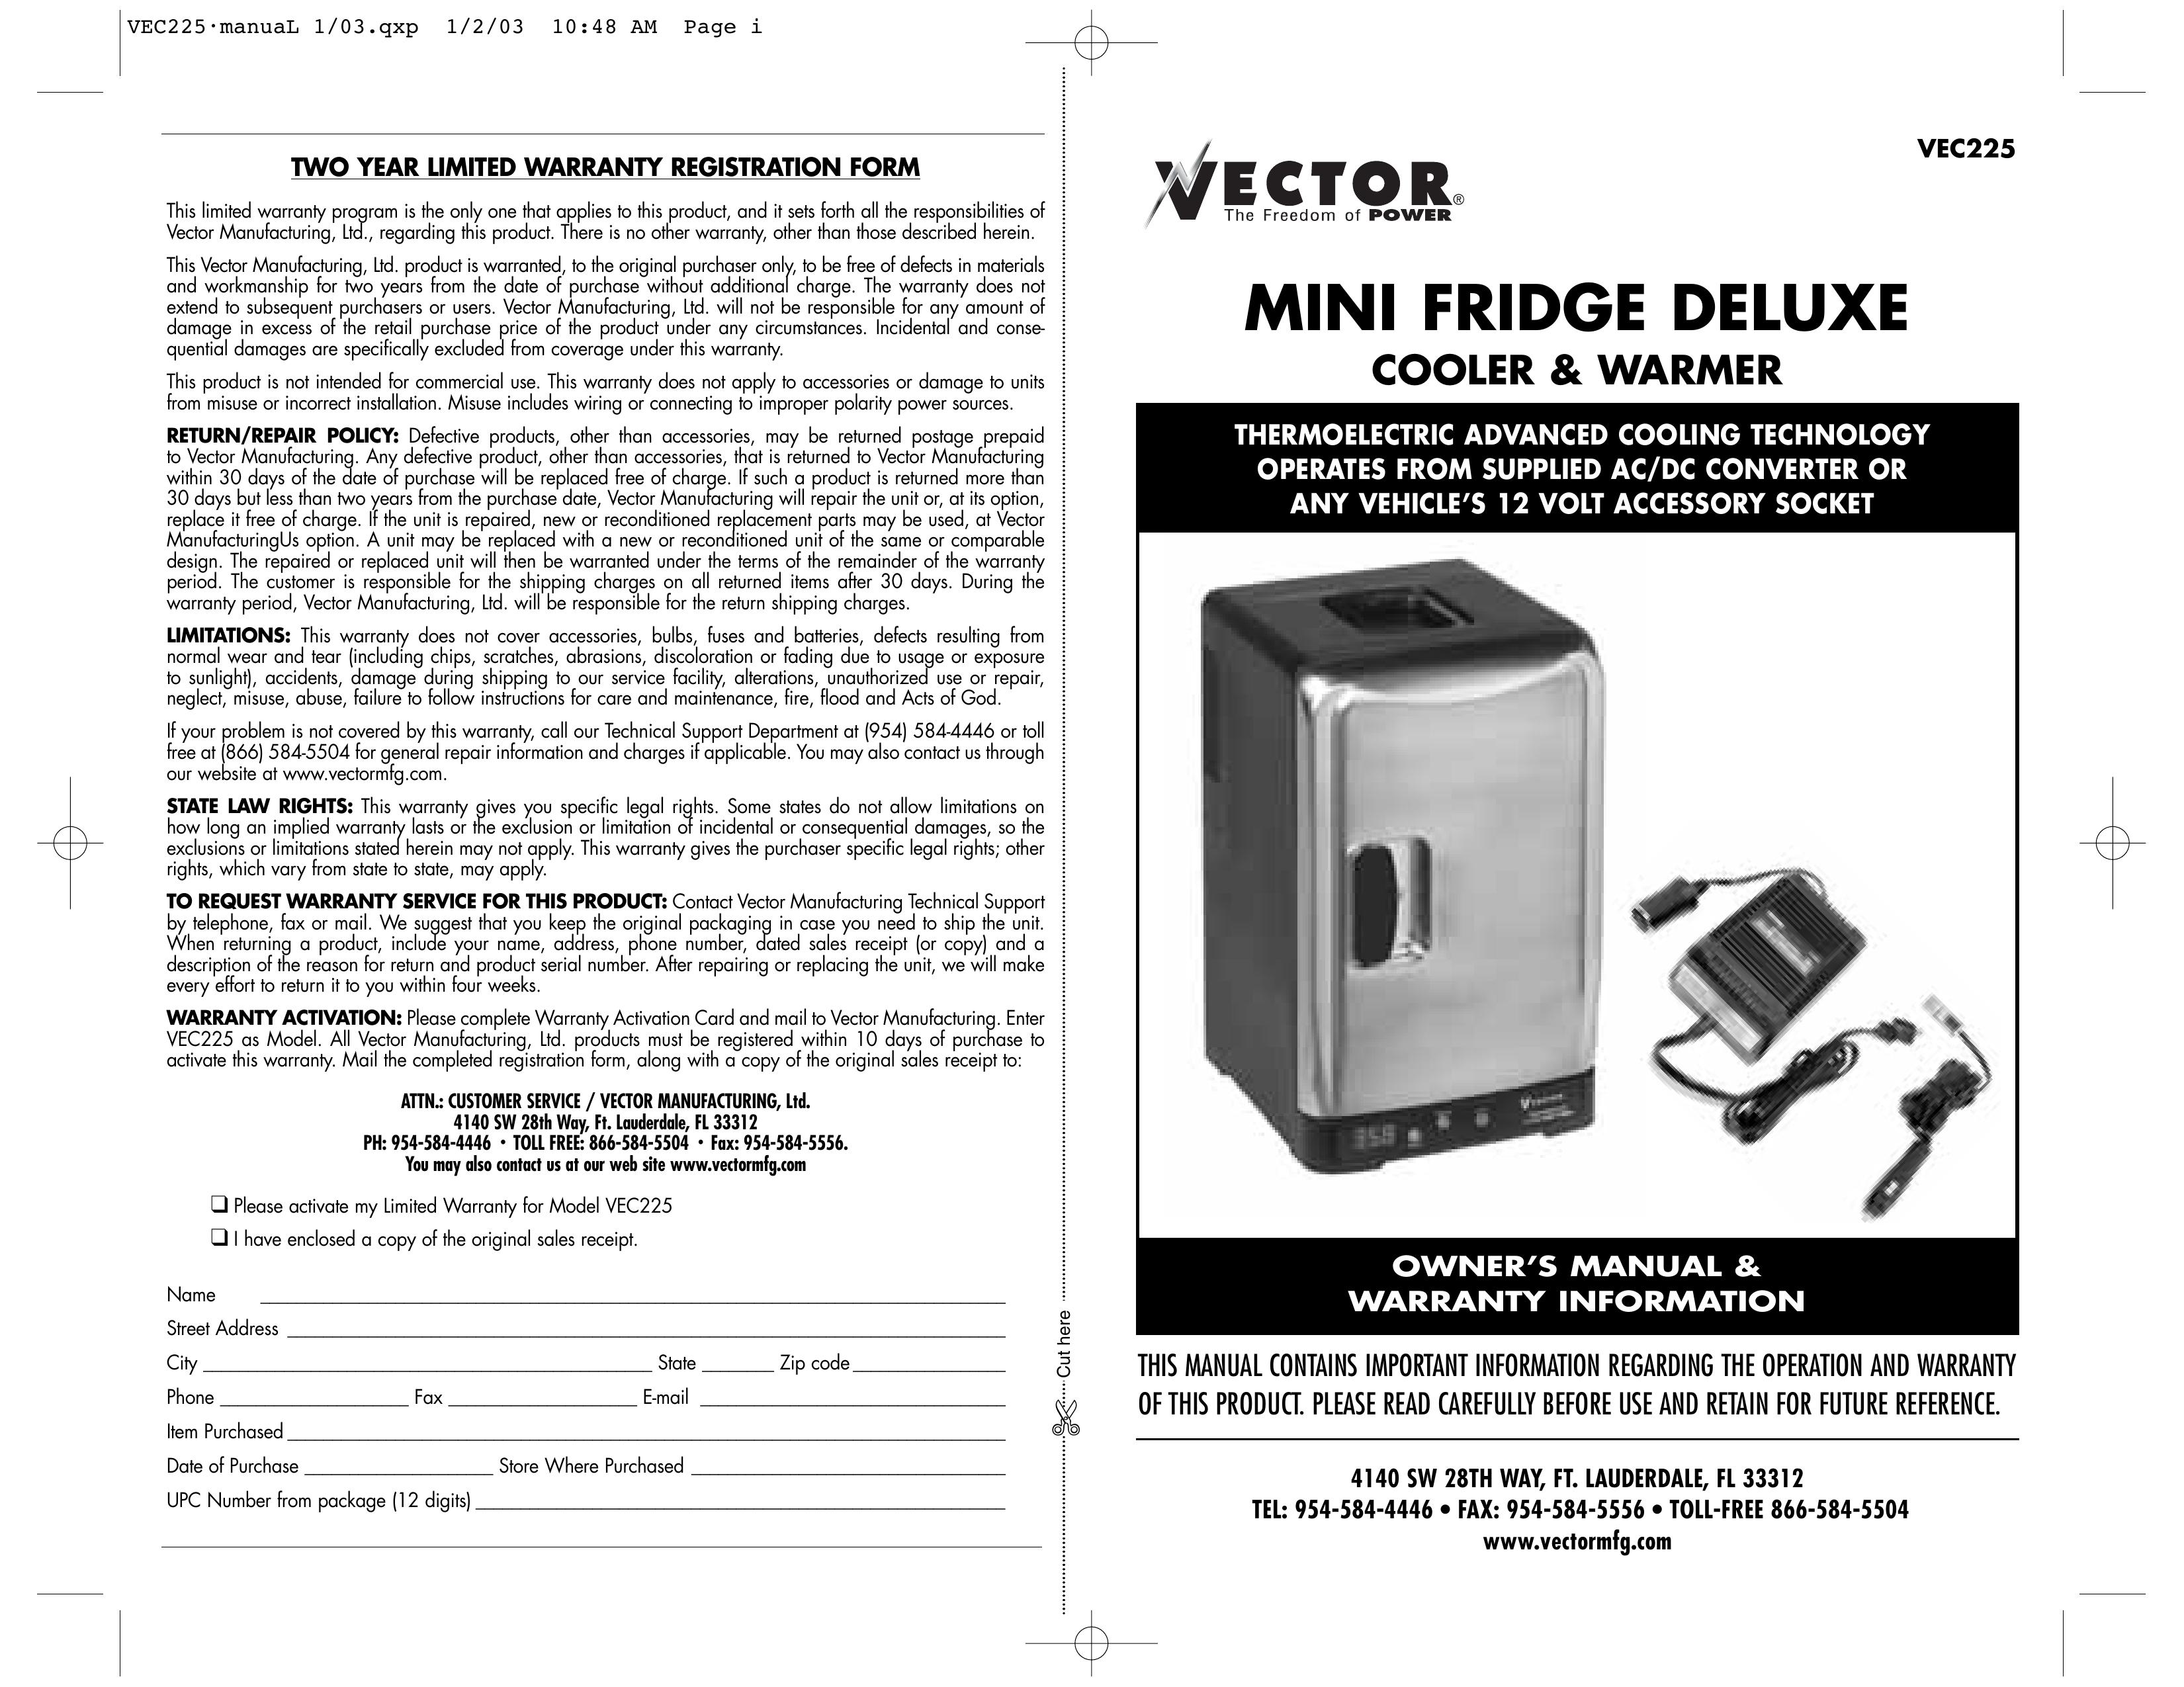 Vector VEC225 Refrigerator User Manual